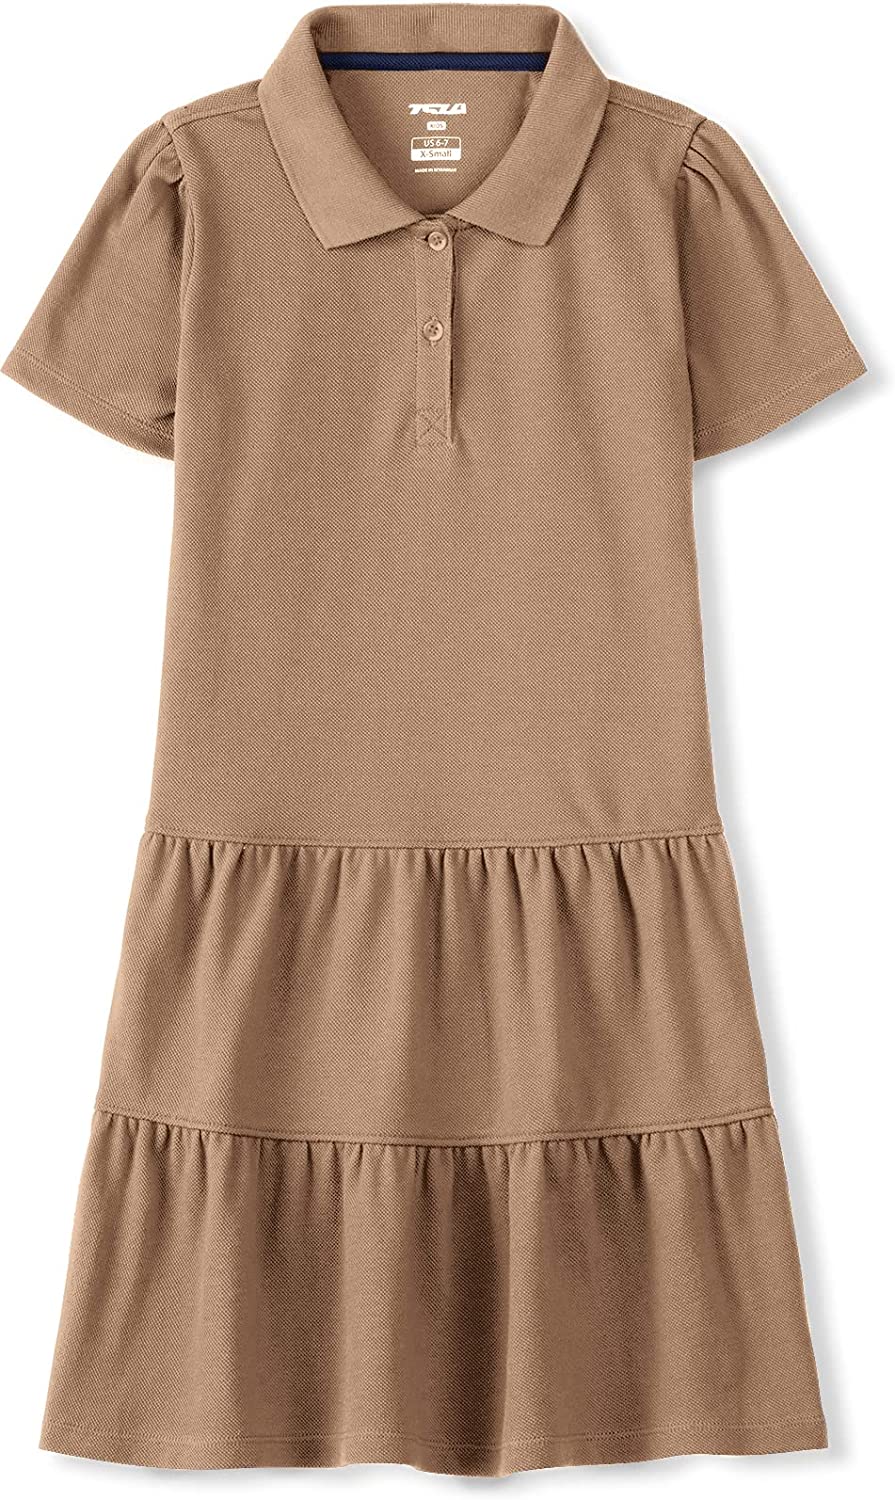 Ruffle Pique Polo Dress TSLA Girl's Short Sleeve School Uniform Dresses 